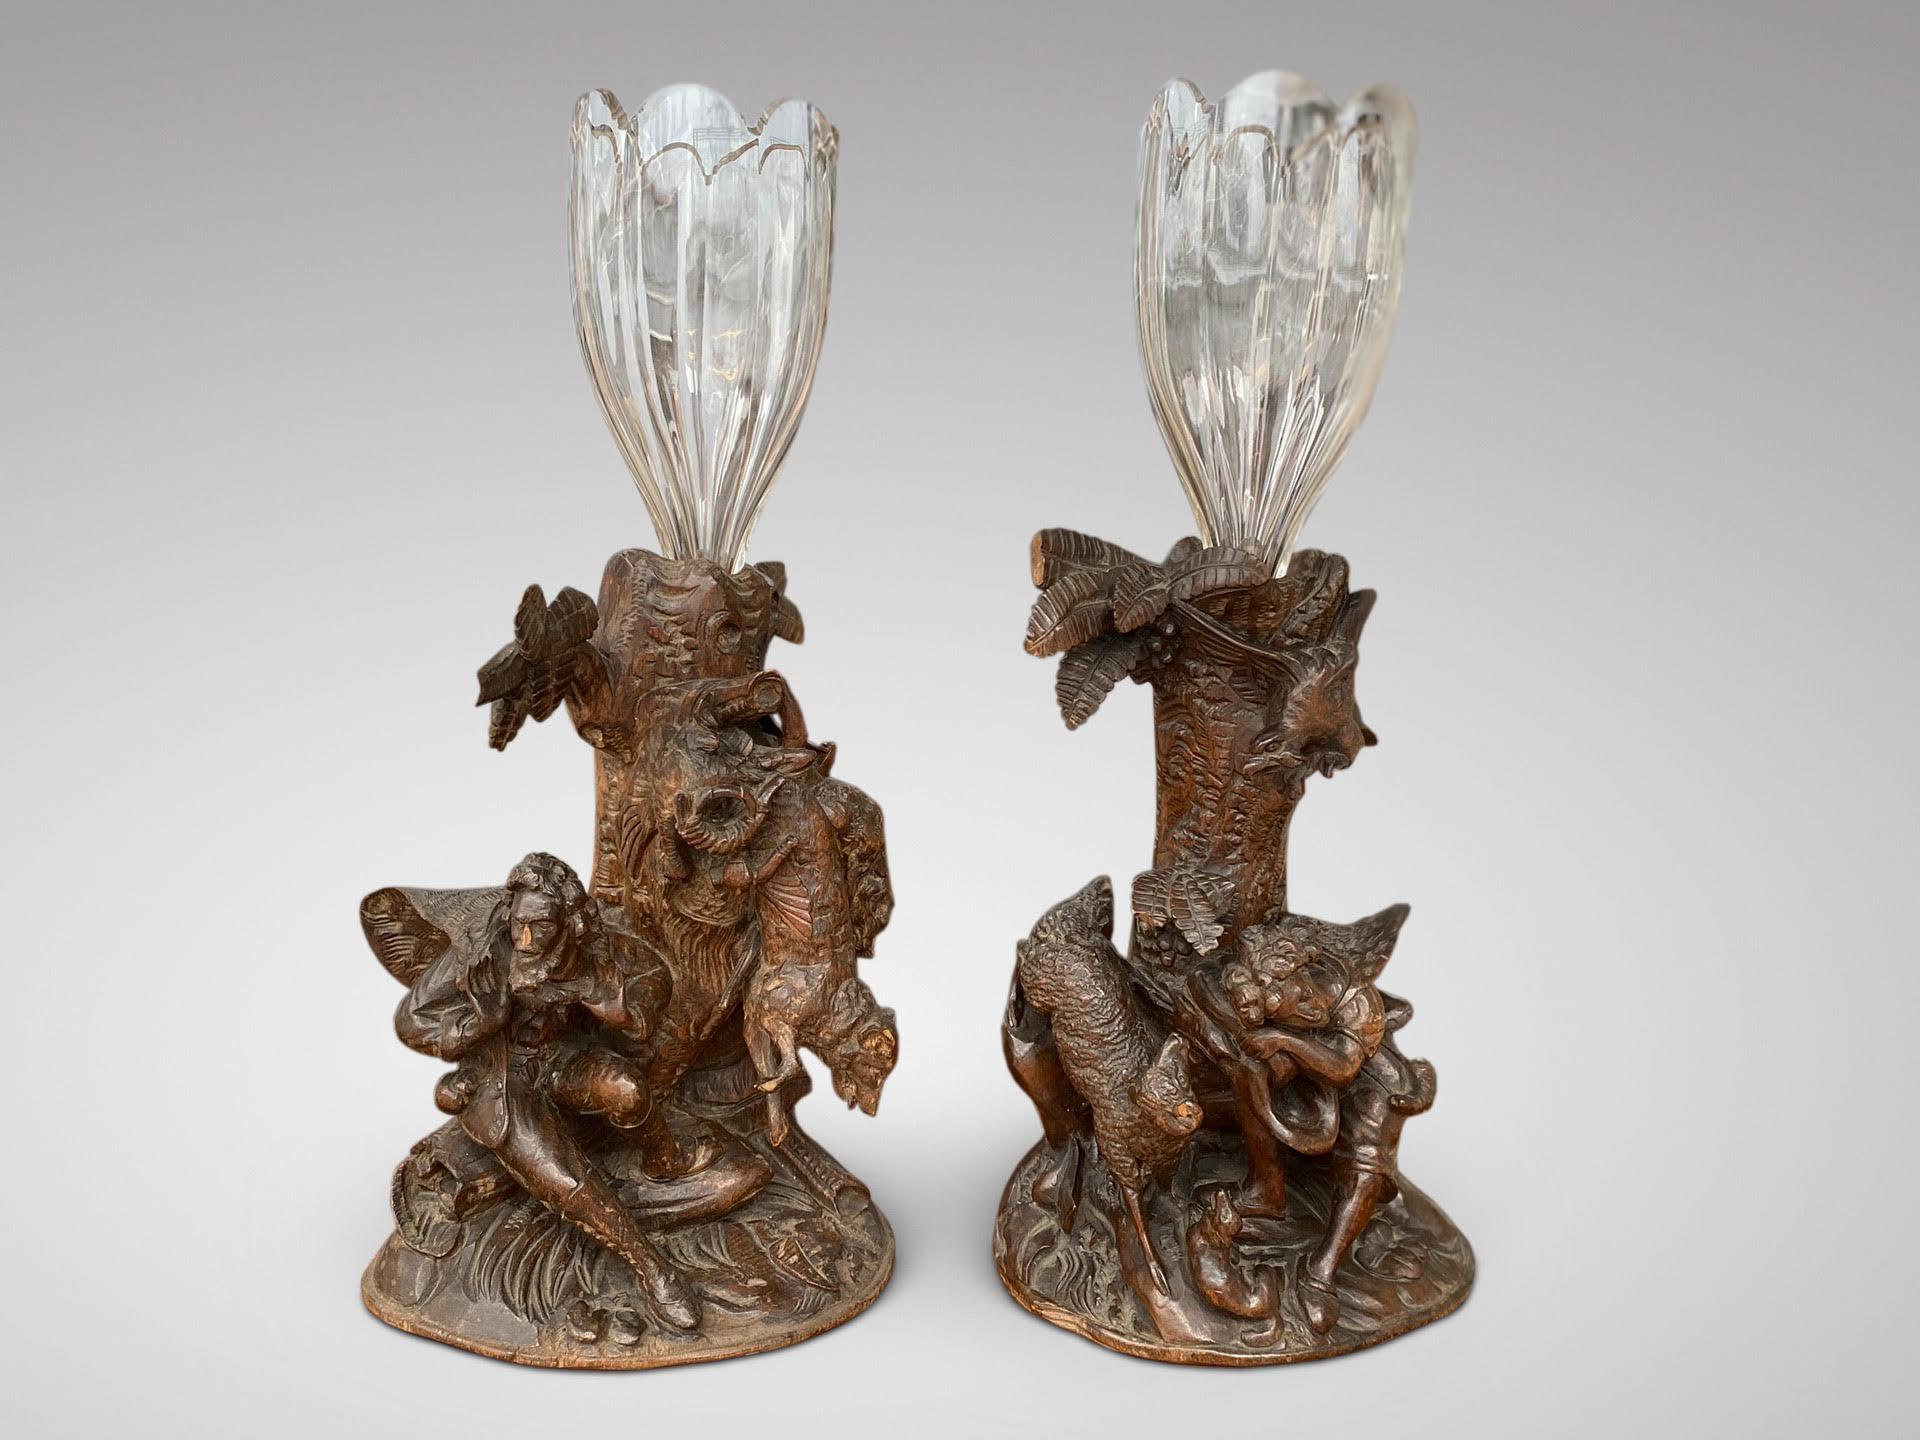 Ein schönes Paar aus geschnitztem Holz des 19. Jahrhunderts mit Jagdszenen aus dem Schwarzwald und Blumenvasen aus Glas. In perfektem Originalzustand. 

Die Abmessungen sind:
Höhe: 42,5 cm (16,7 Zoll)
Breite: 20cm (7.9in)
Tiefe: 14cm (5.5in)

Dieses